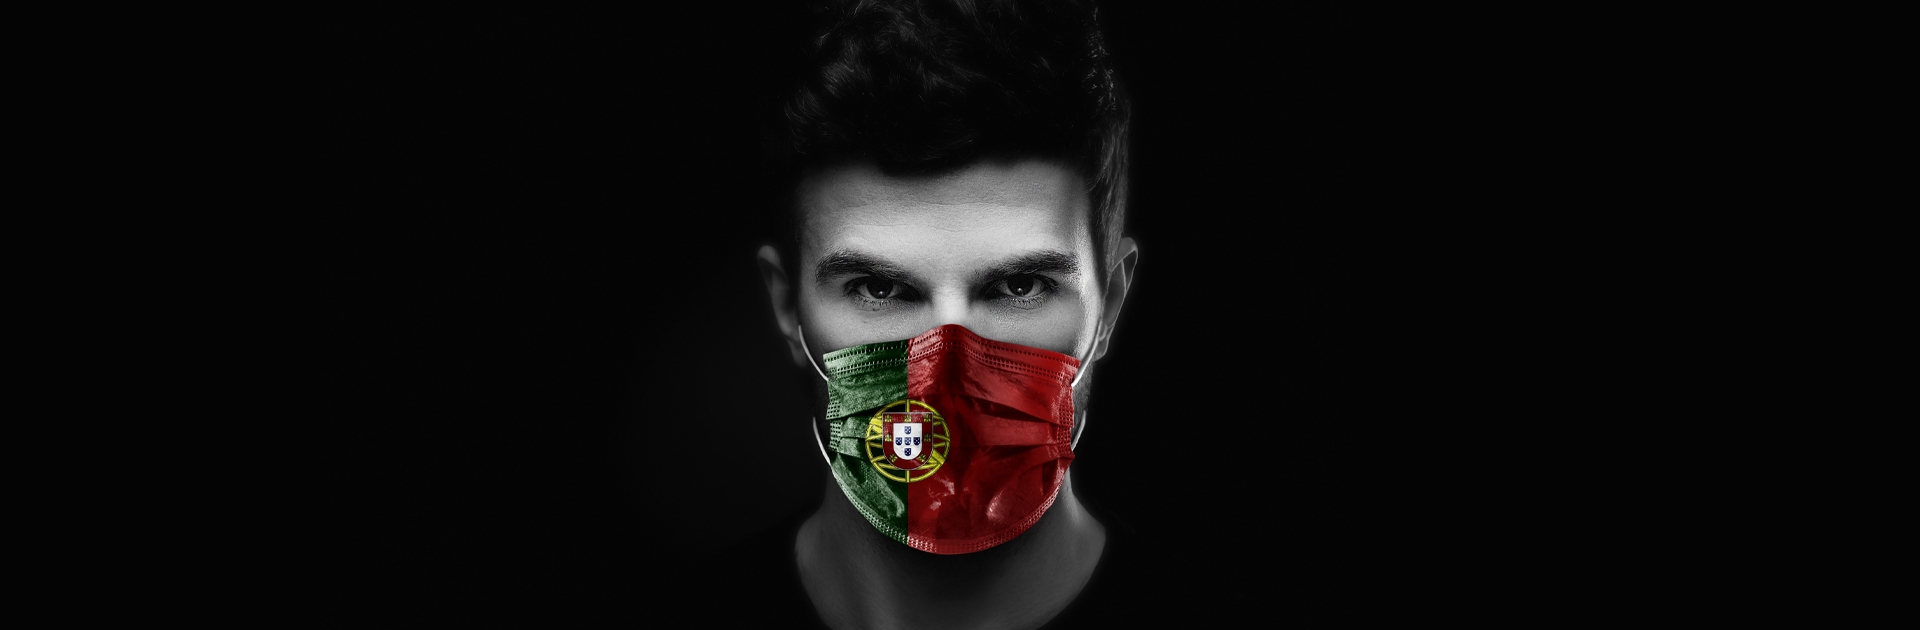 Homem com máscara com a bandeira portuguesa